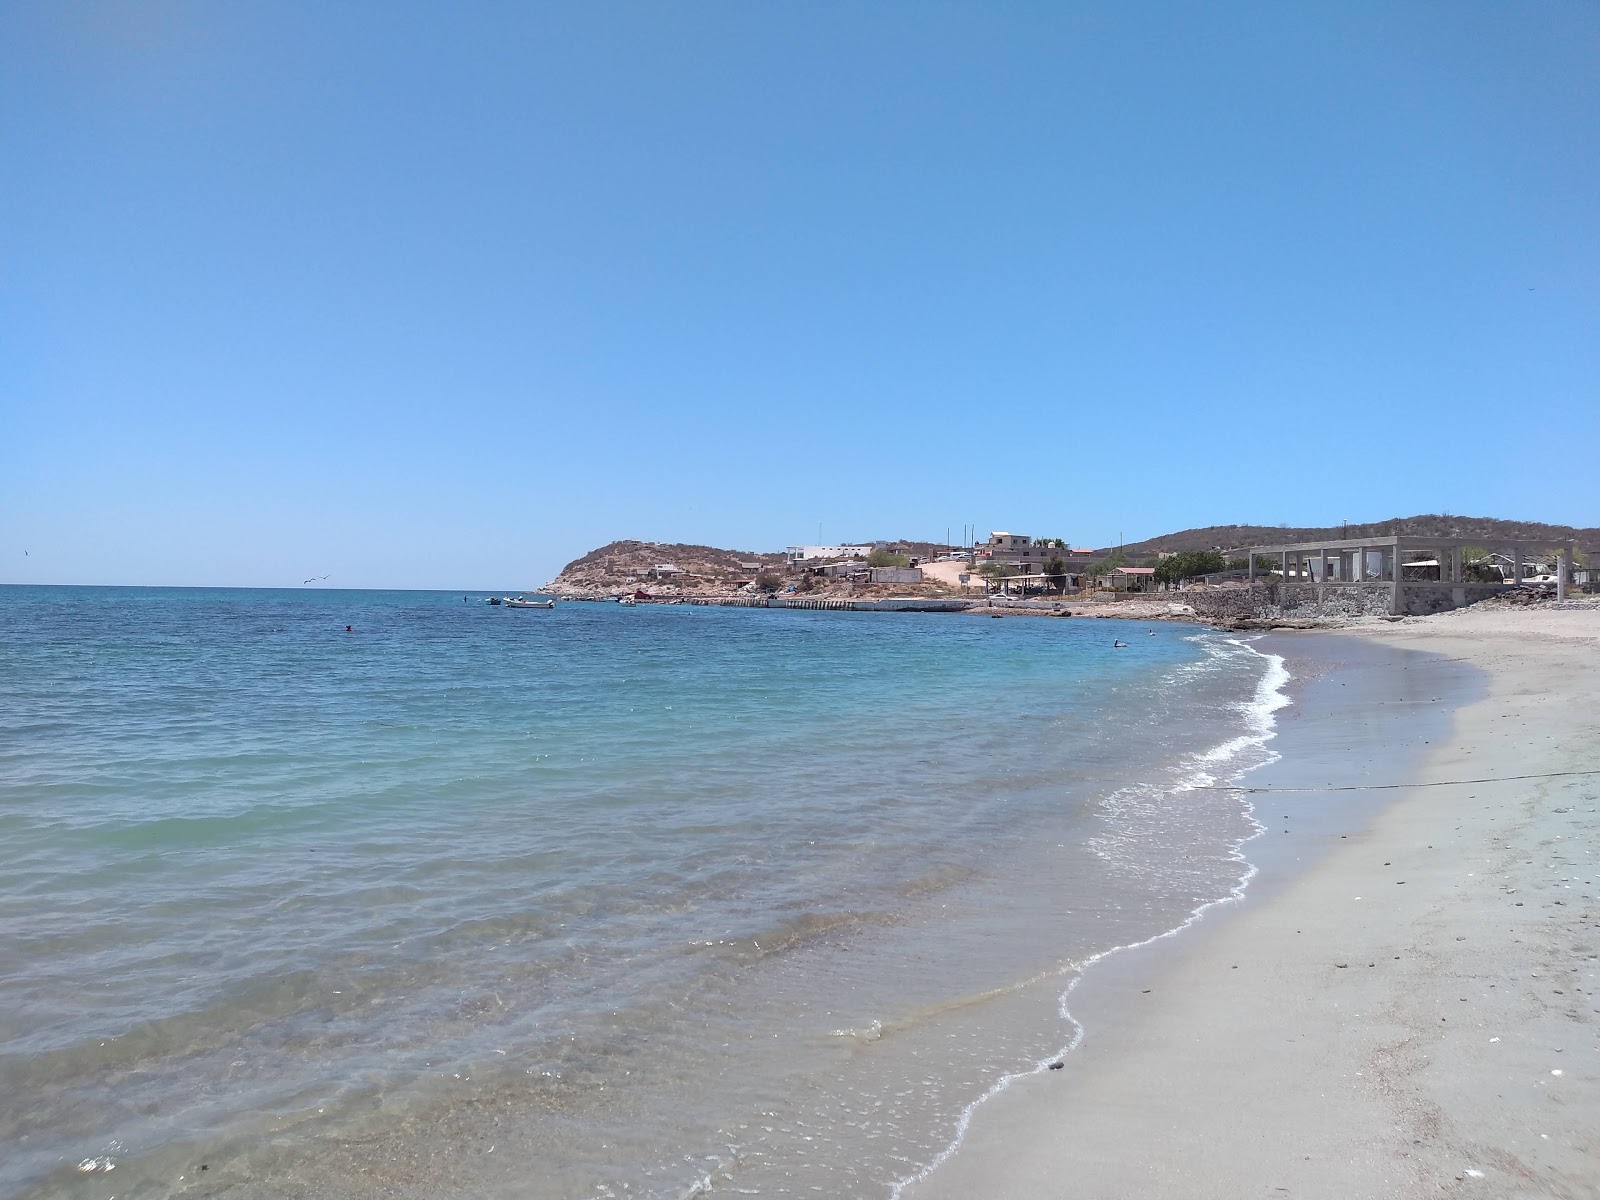 Zdjęcie Mariscos beach z powierzchnią jasny piasek